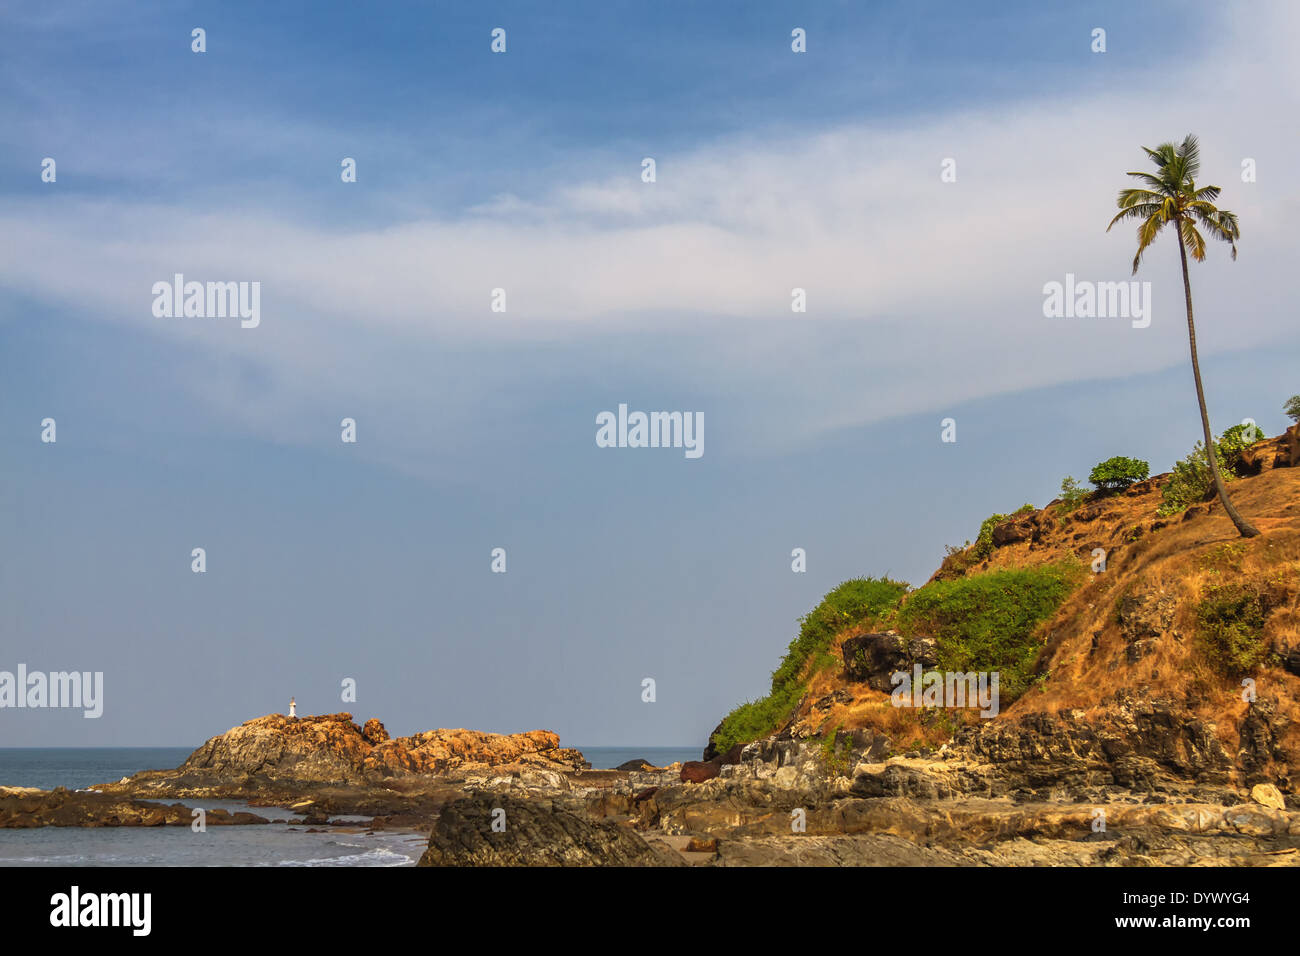 Blick vom Strand in Goa zum arabischen Meer. Felsen in der Nähe von Meer Stockfoto